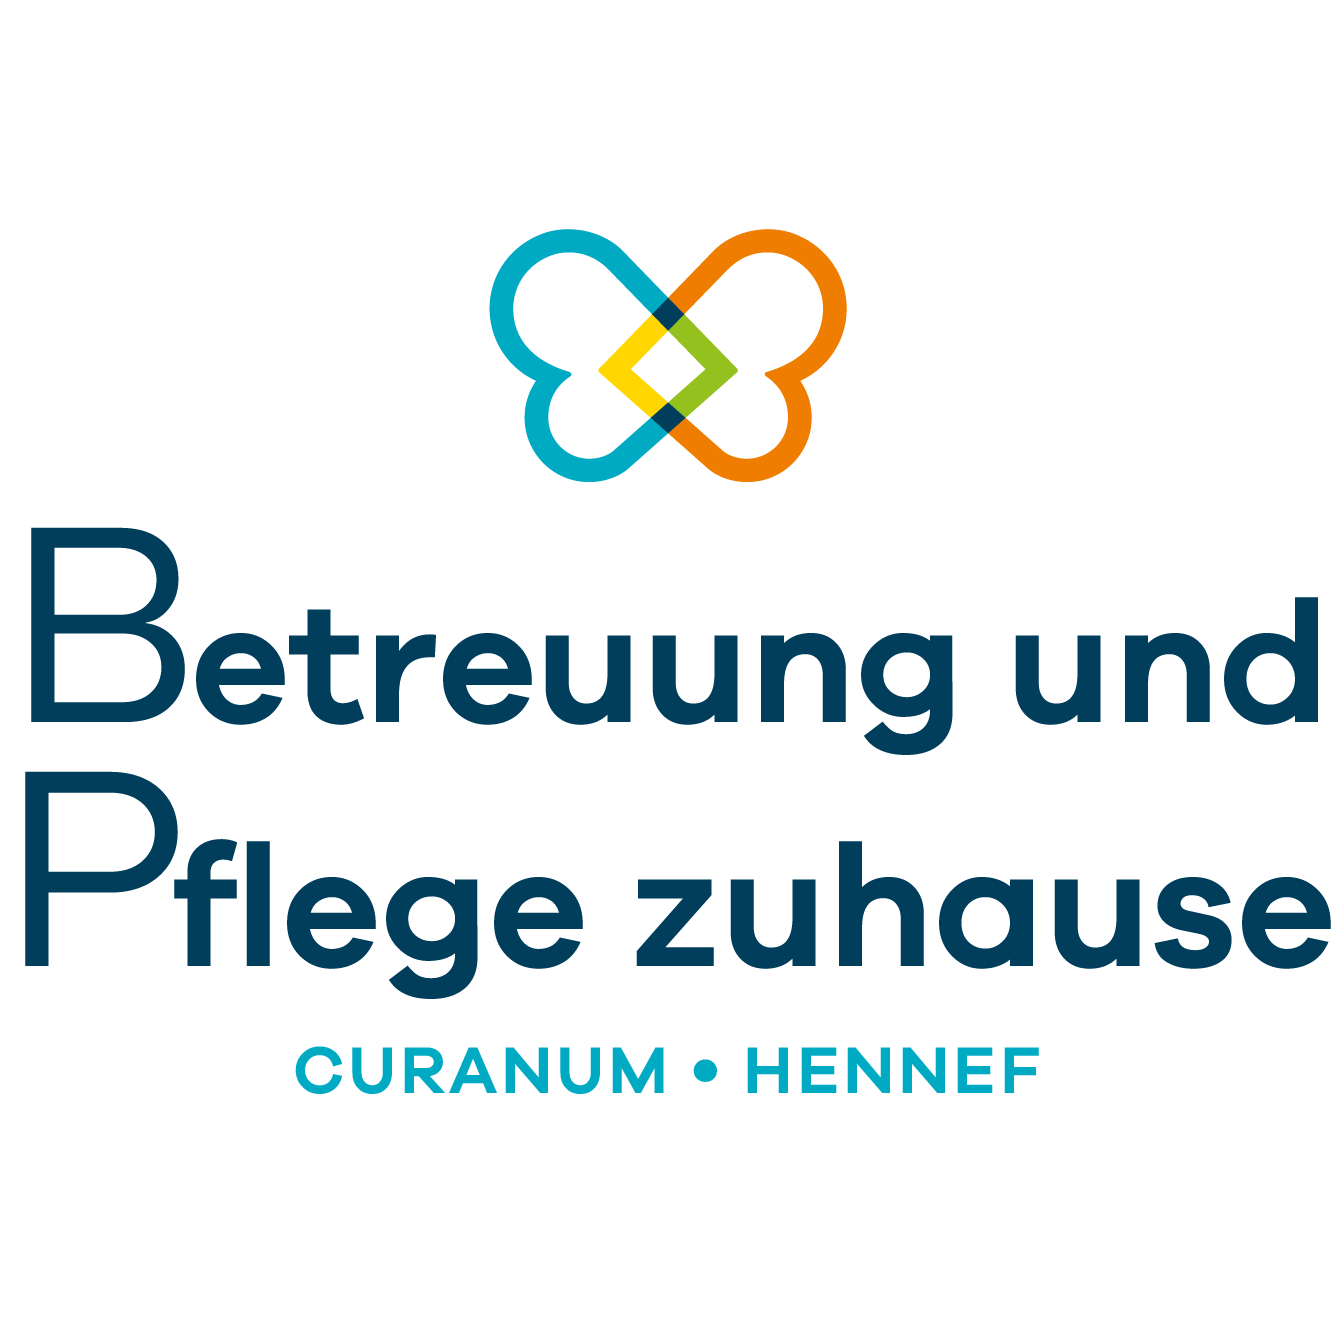 Betreuung und Pflege zuhause Curanum Hennef Logo